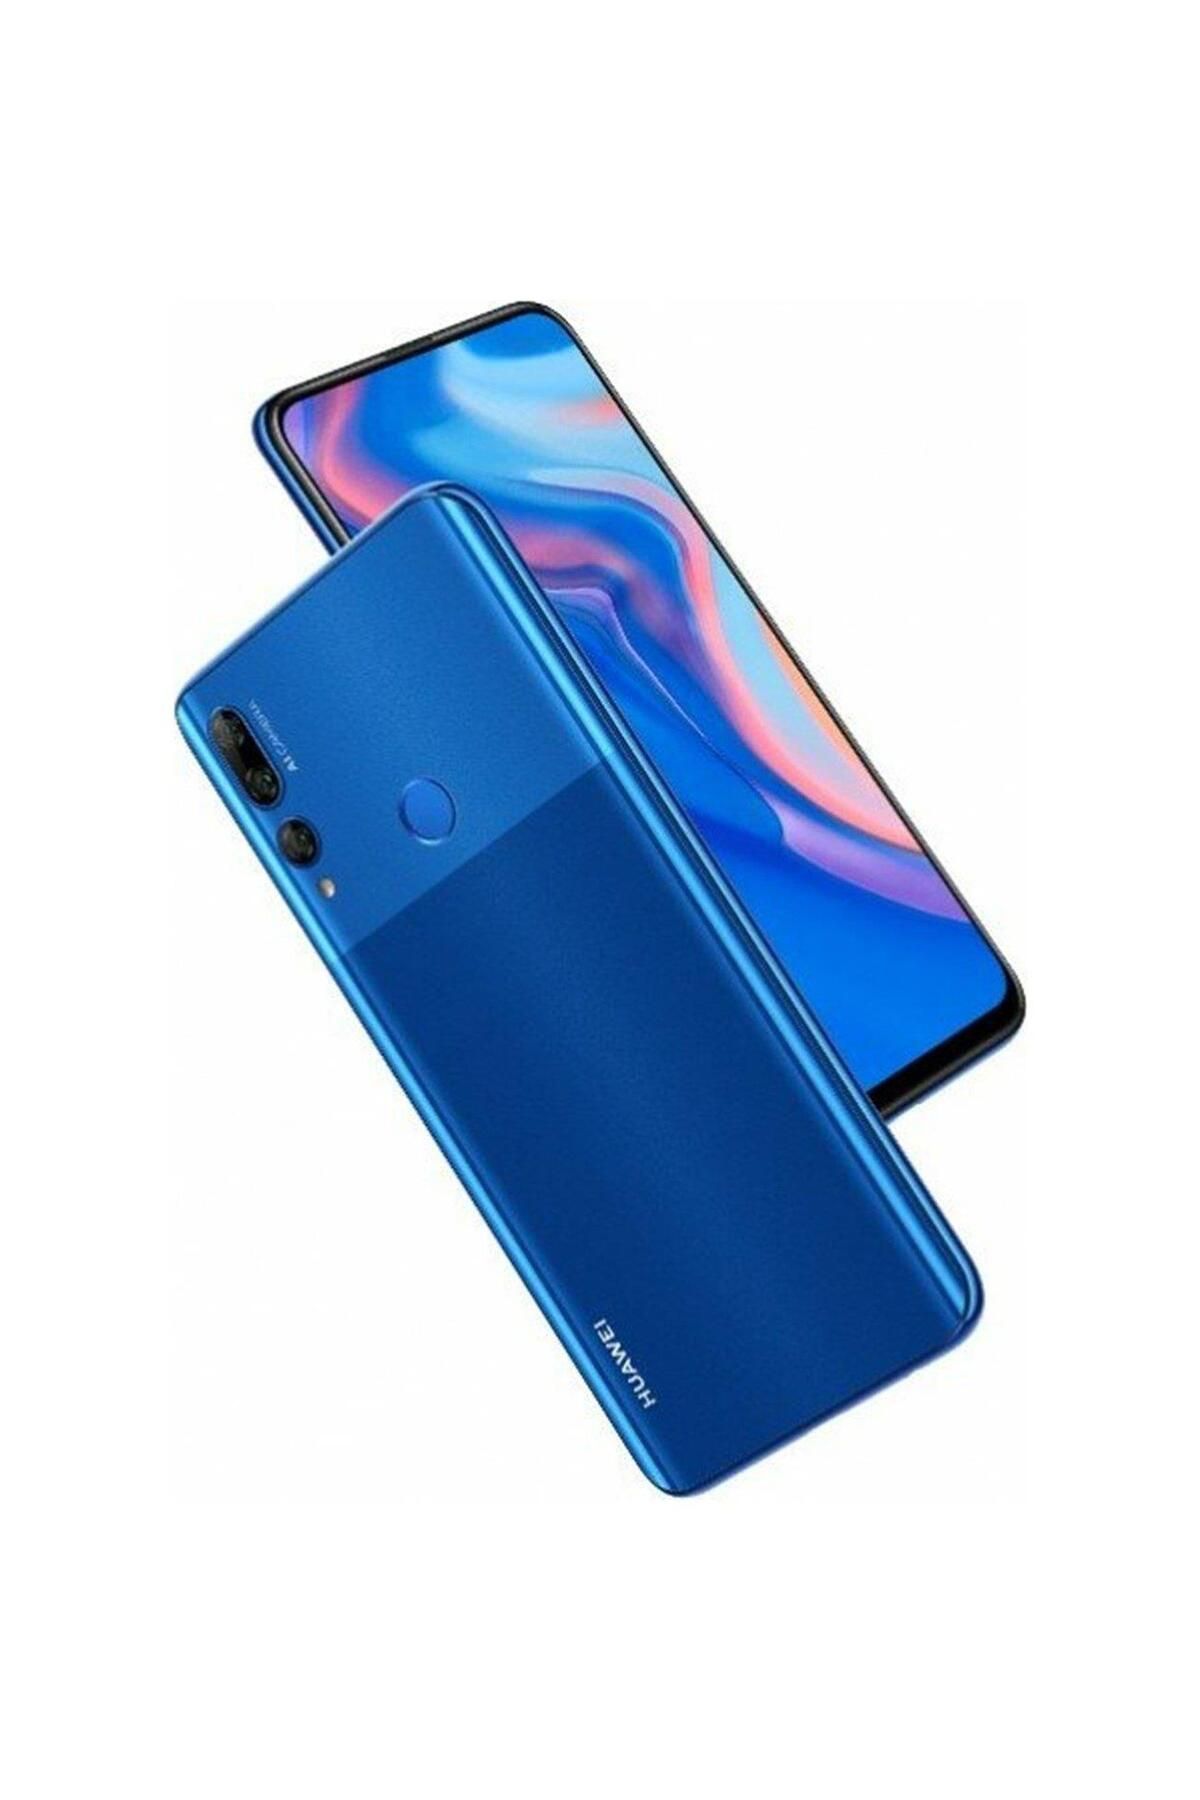 Huawei Y9 Prime 2019 Mavi 128 GB 4 GB Ram YENİLENMİŞ ÜRÜN (Sıfır Gibi)